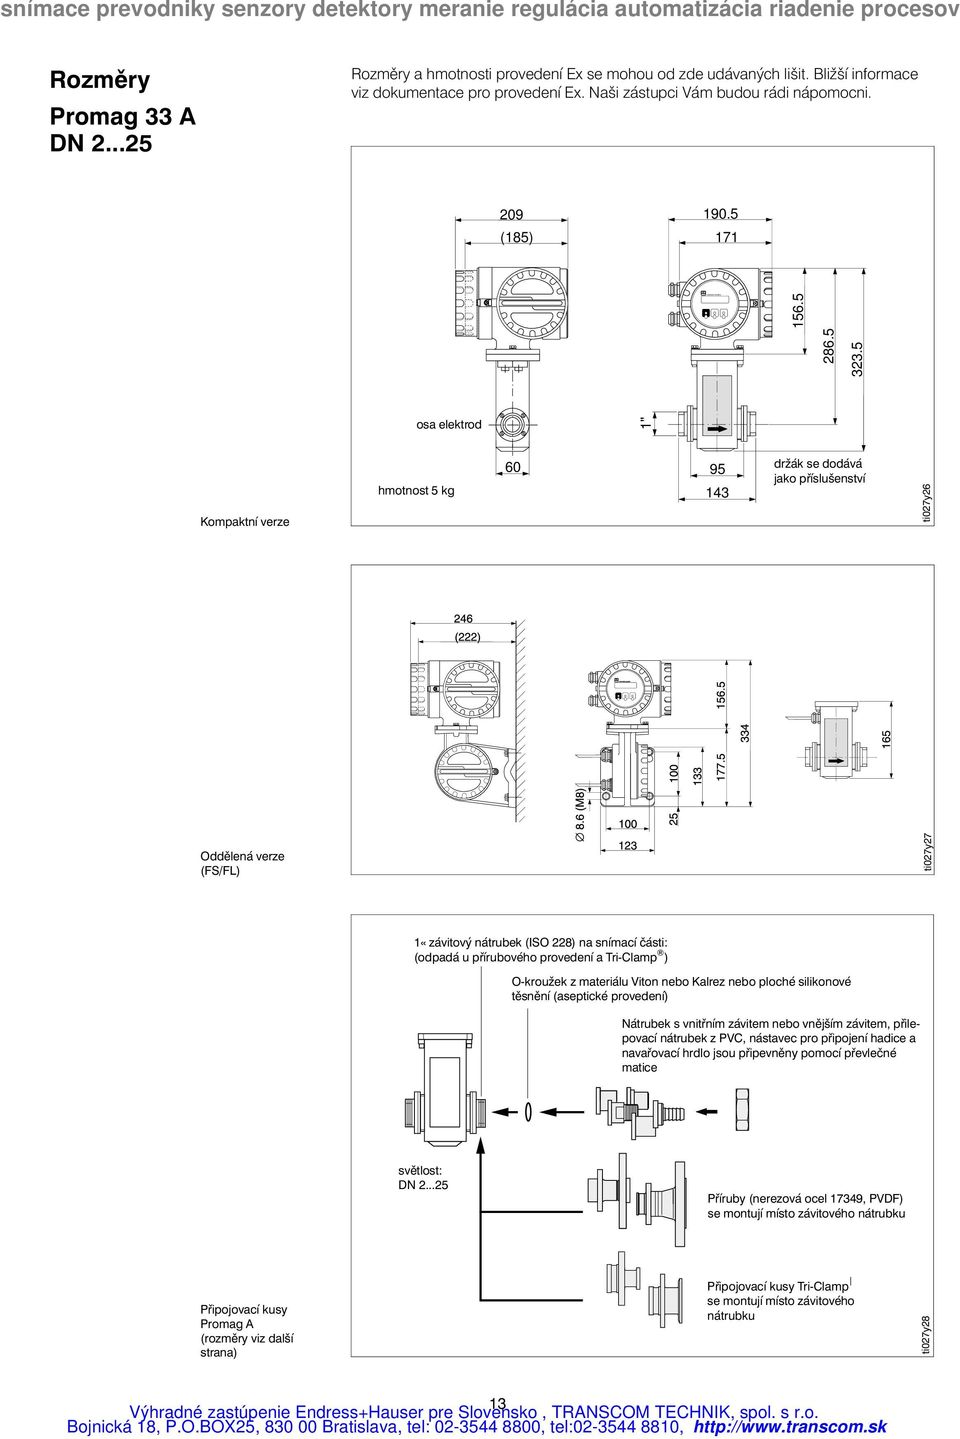 5 osa elektrod 1" Kompaktní verze hmotnost 5 kg 60 95 143 držák se dodává jako příslušenství ti027y26 Oddělená verze (FS/FL) ti027y27 1«závitový nátrubek (ISO 228) na snímací části: (odpadá u